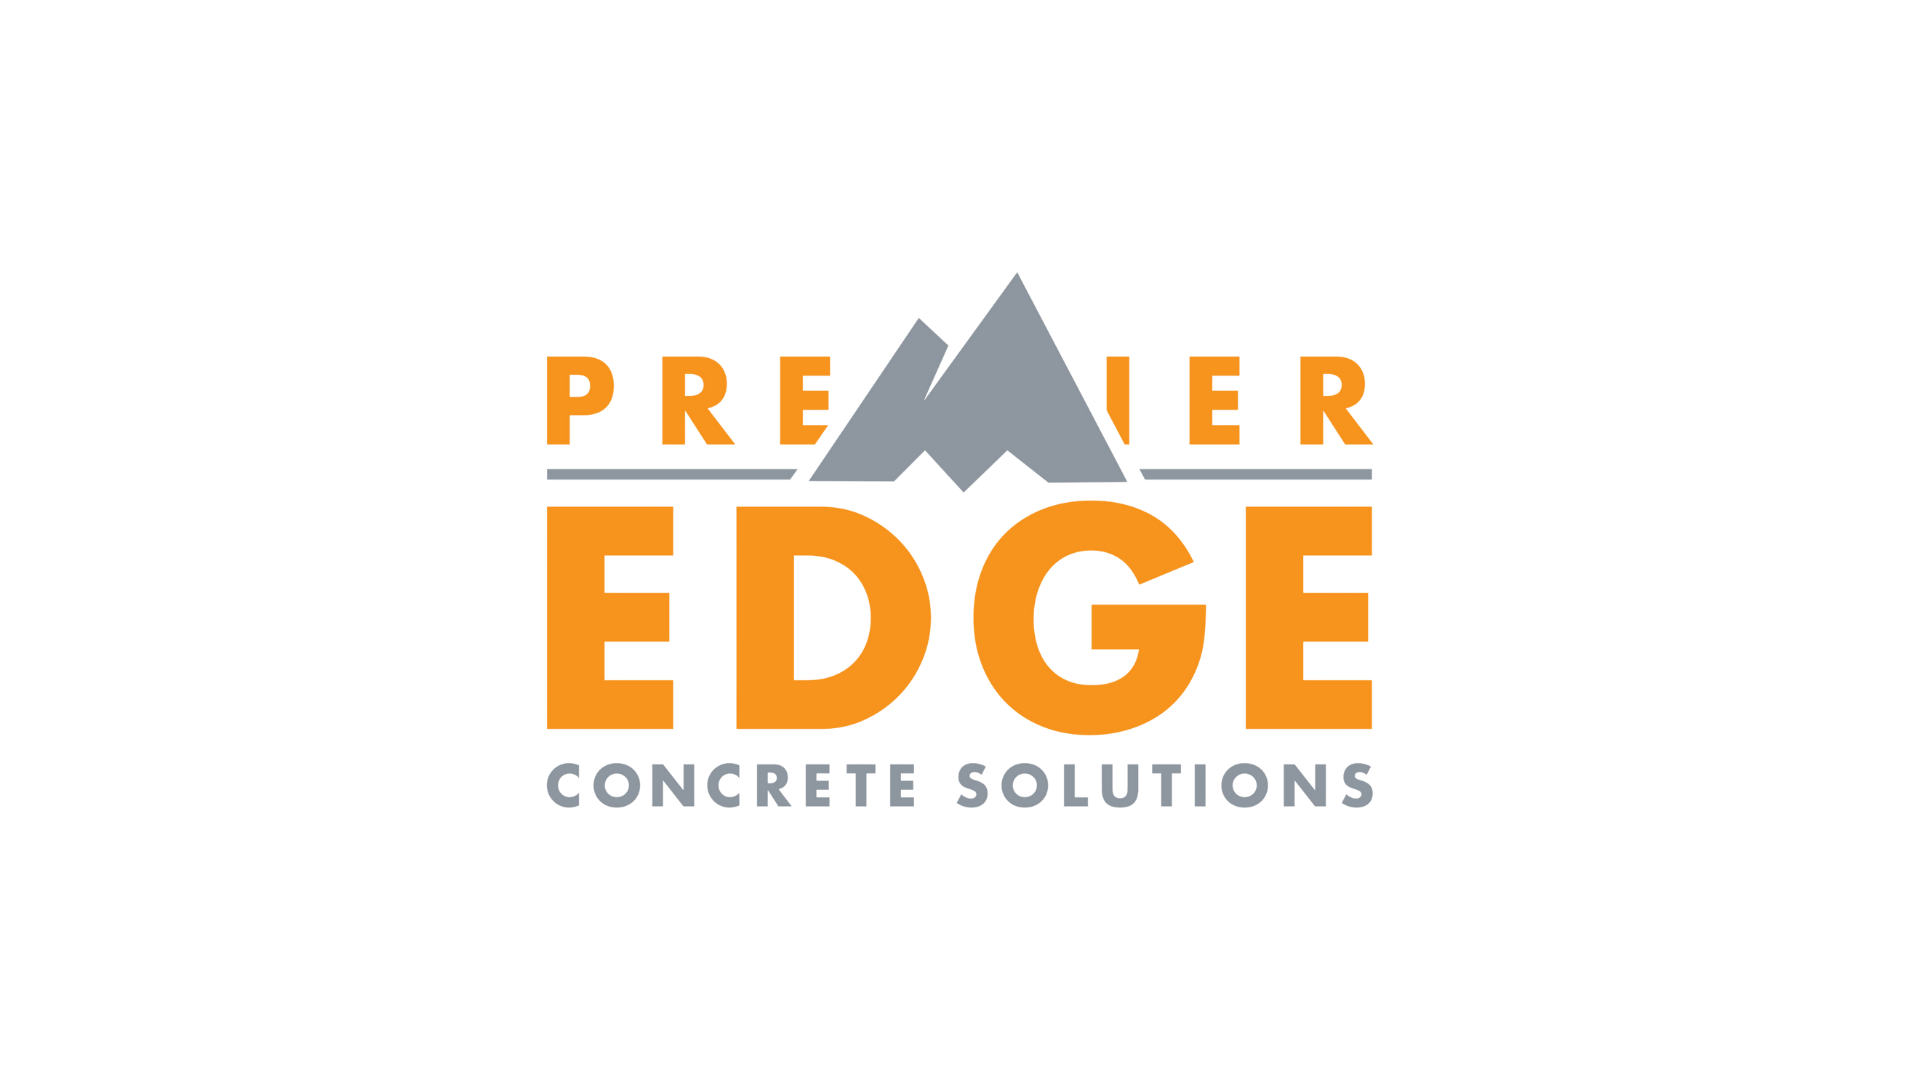 Premier Edge Concrete Solutions